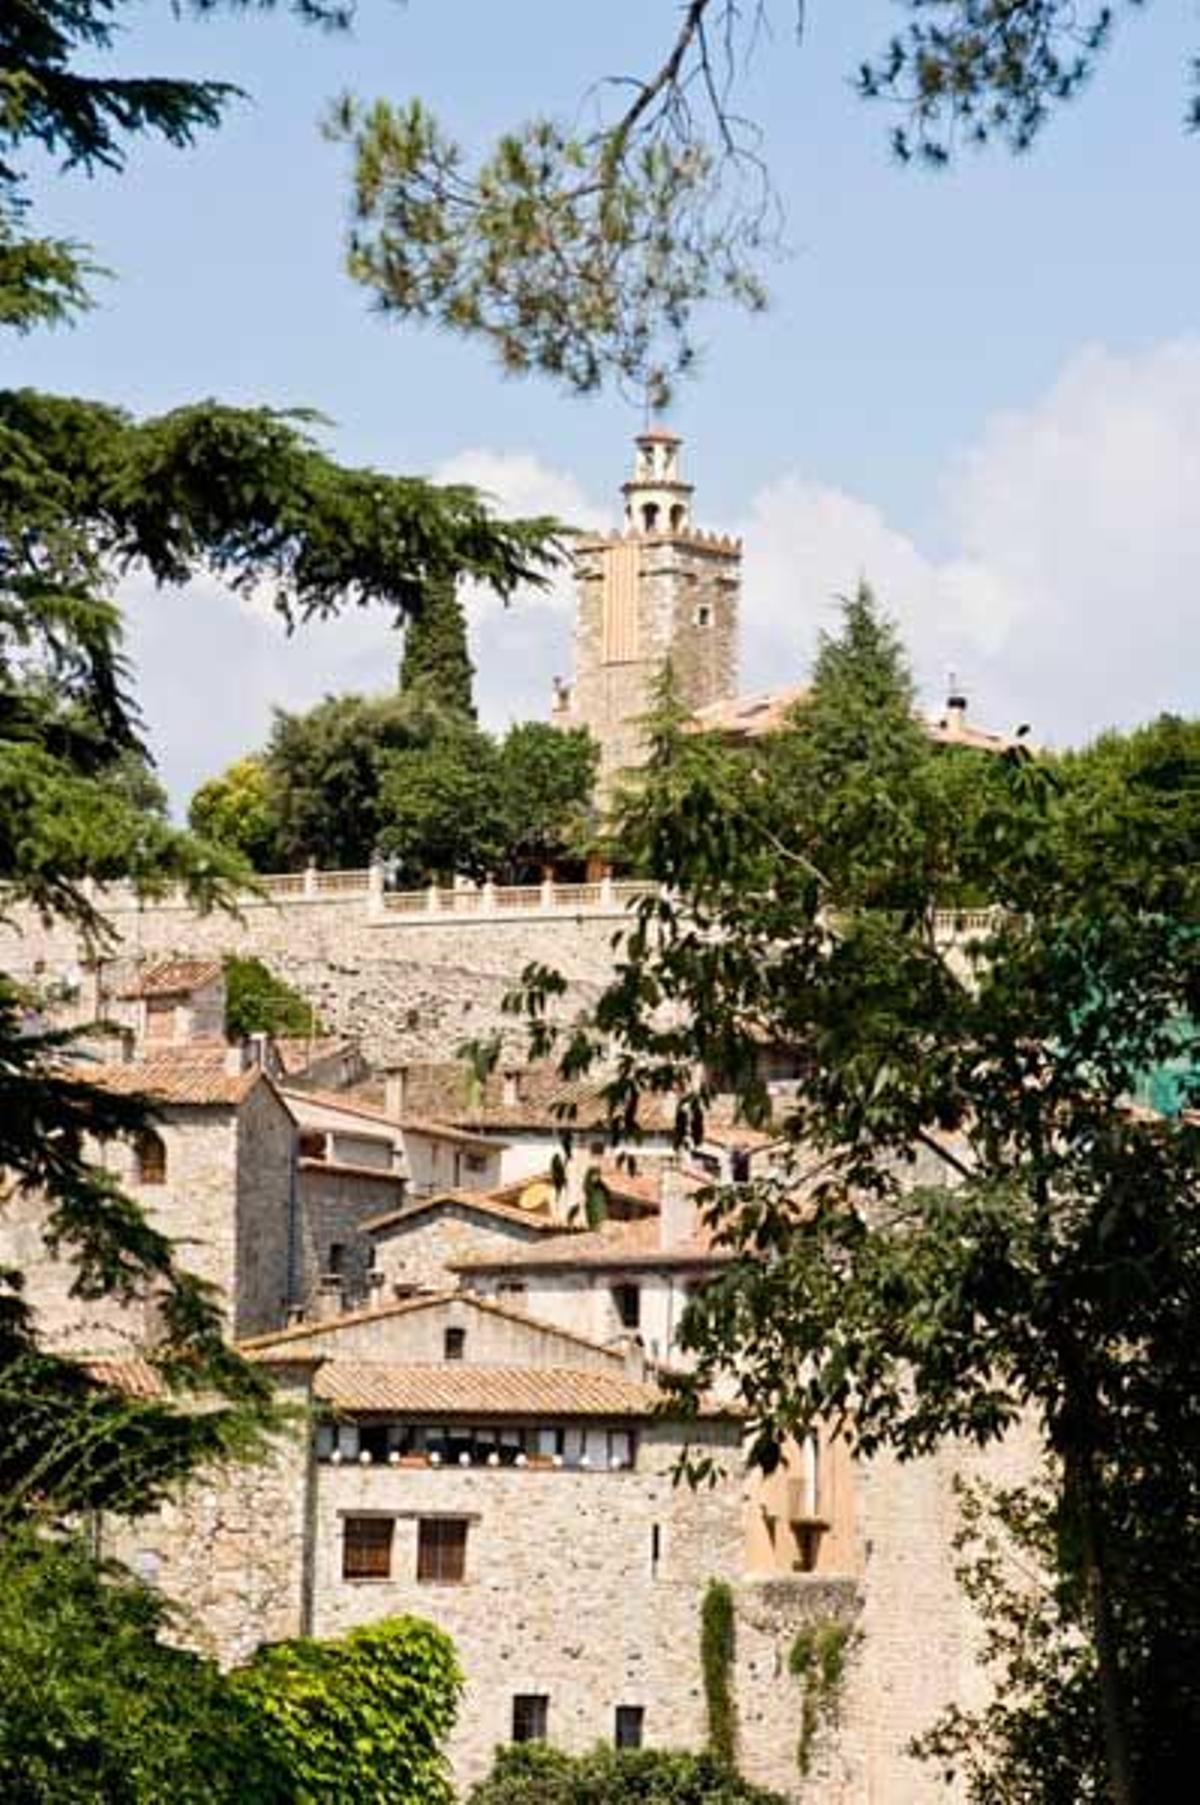 Villa medieval de Besalú, en la comarca de La Garrocha, en la provincia de Gerona.